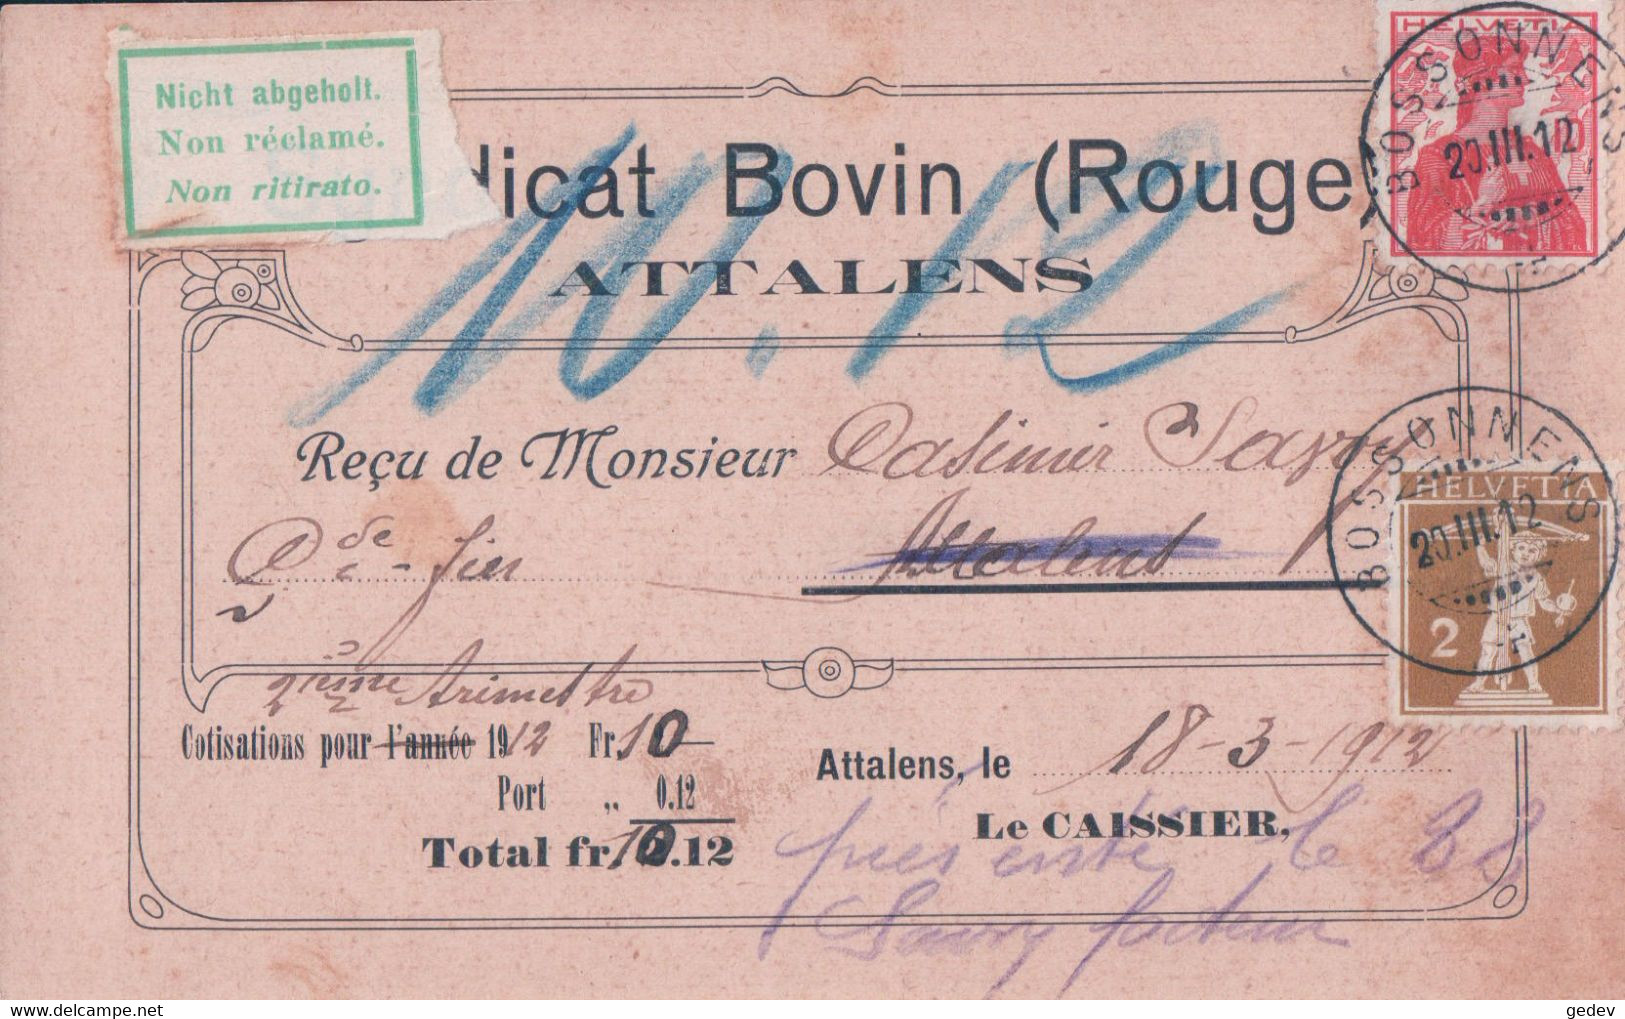 Attalens FR, Syndicat Bovin Rouge, Carte Postale Cachet Bossonnens 20.3.12 Non Réclamé (130) - Attalens